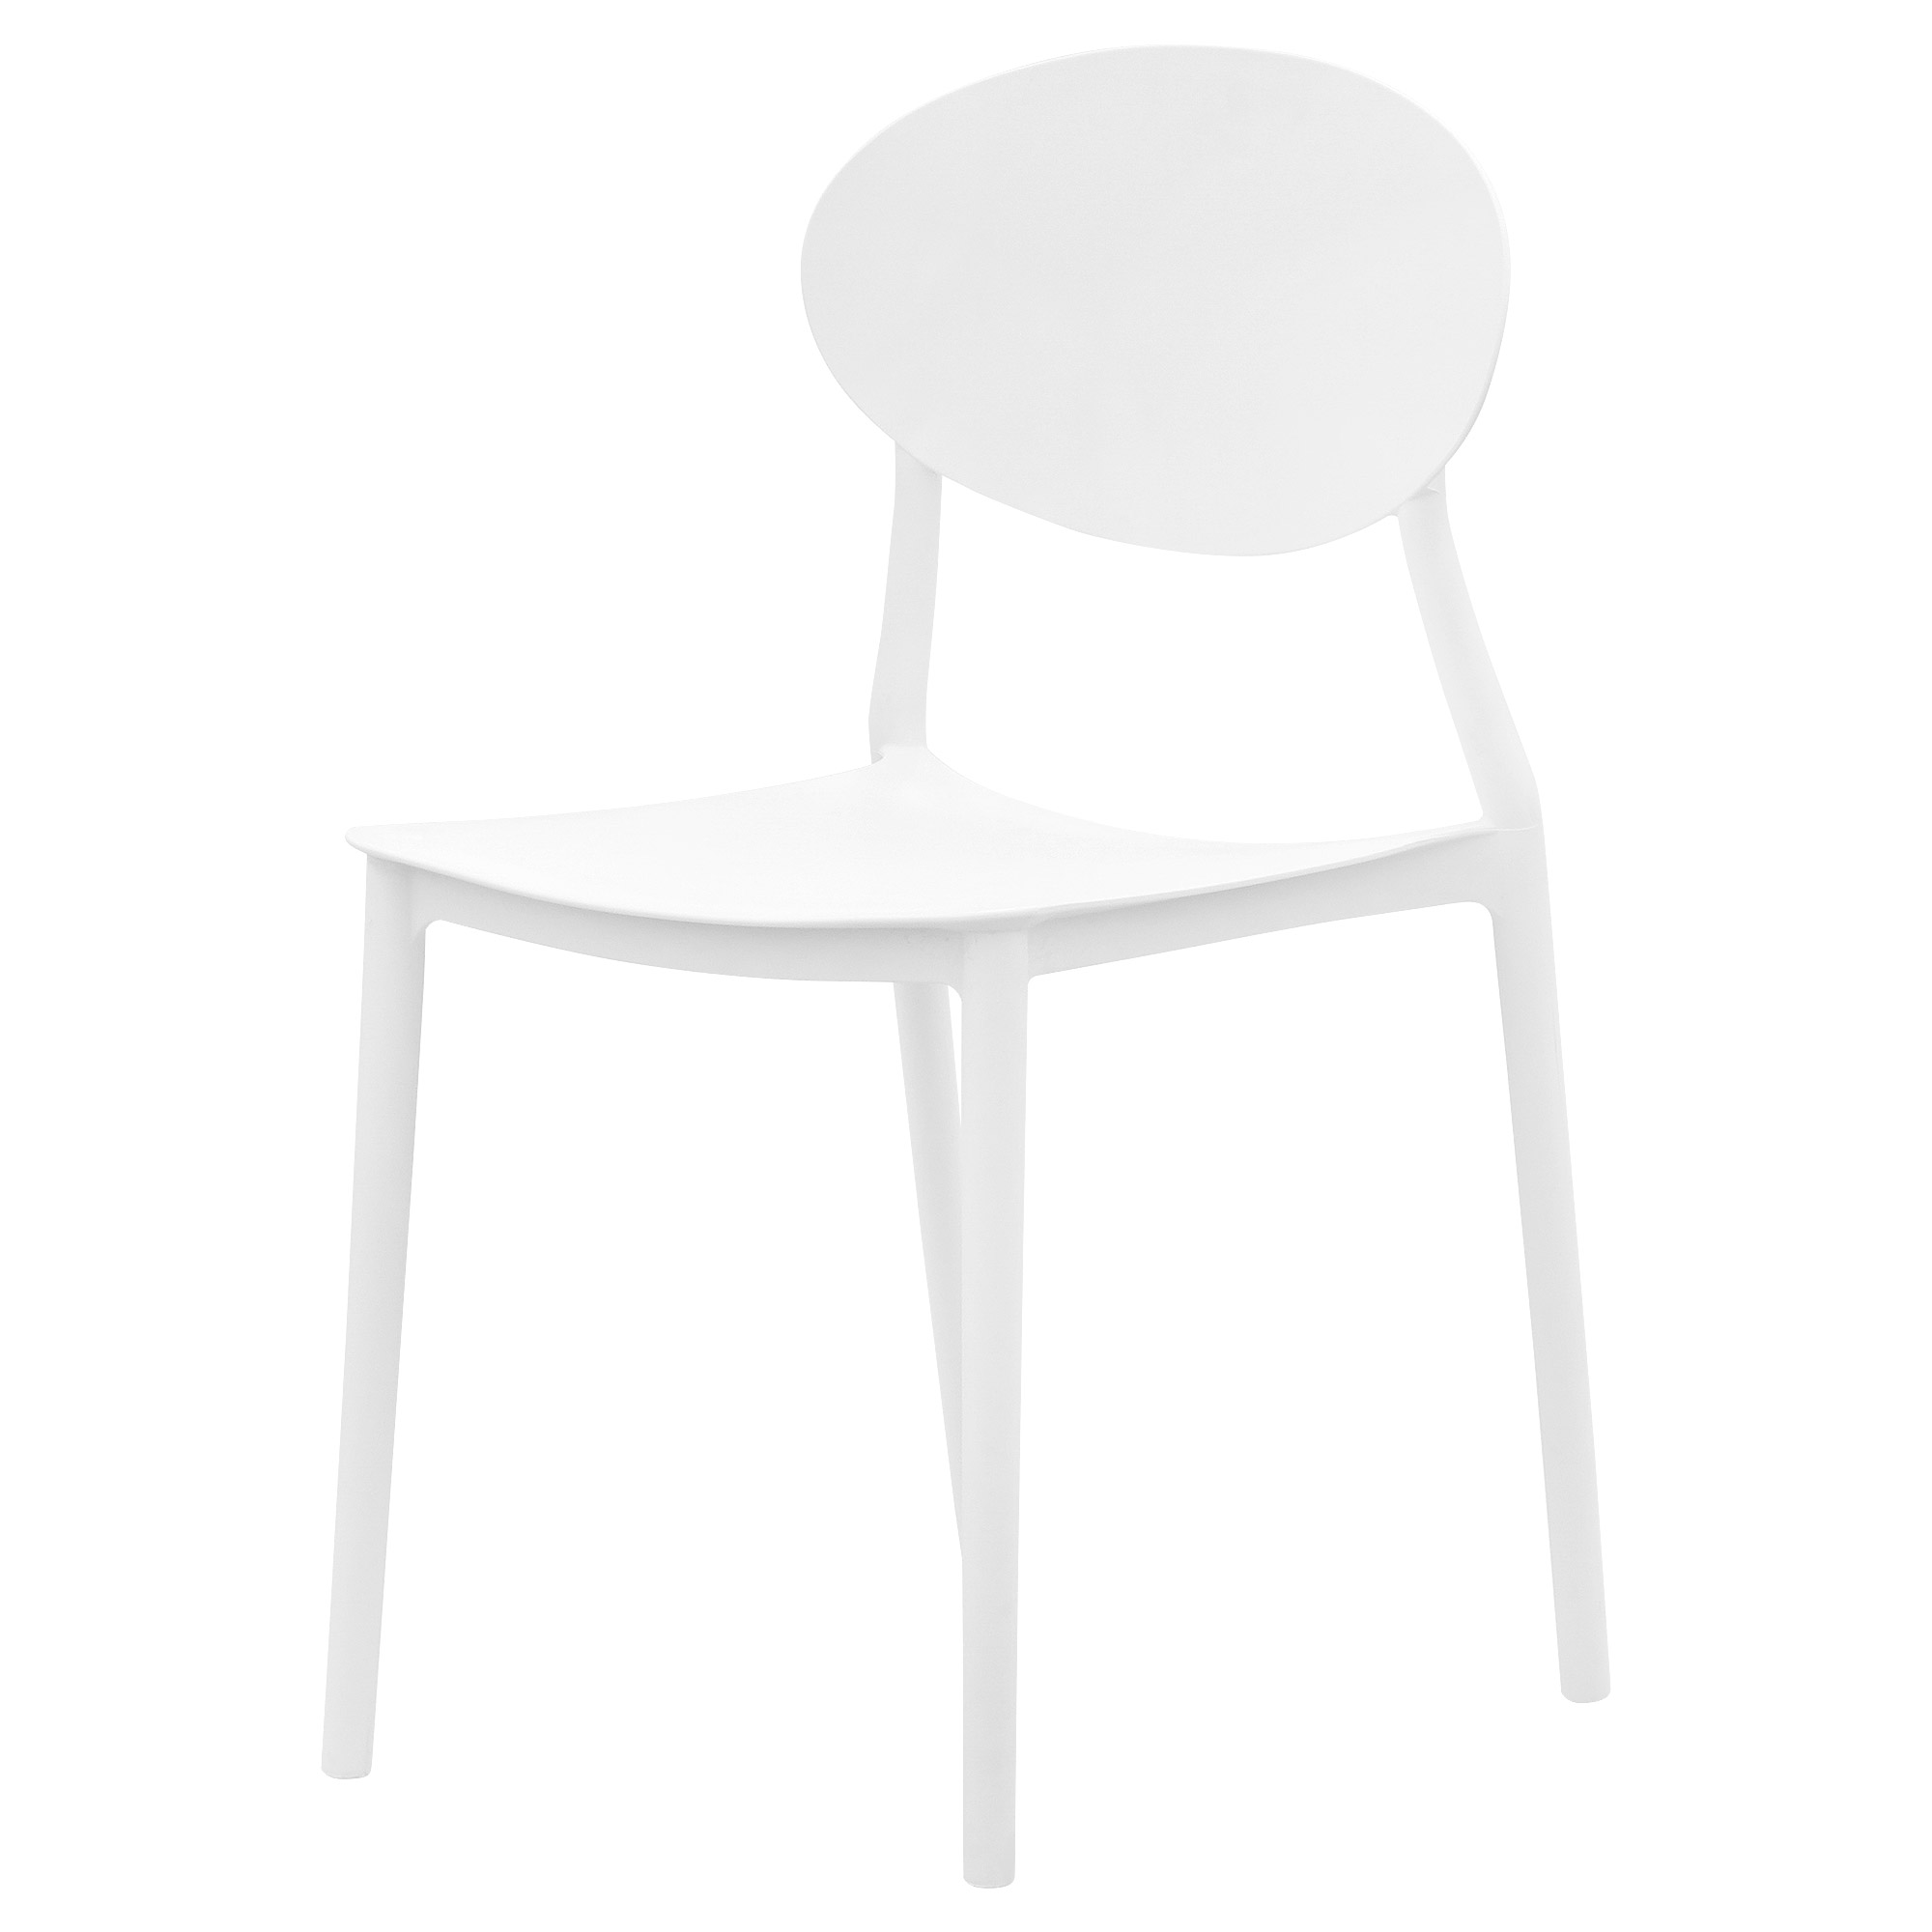 Комплект Langfang: стол + 4 стула Венера белый - фото 3